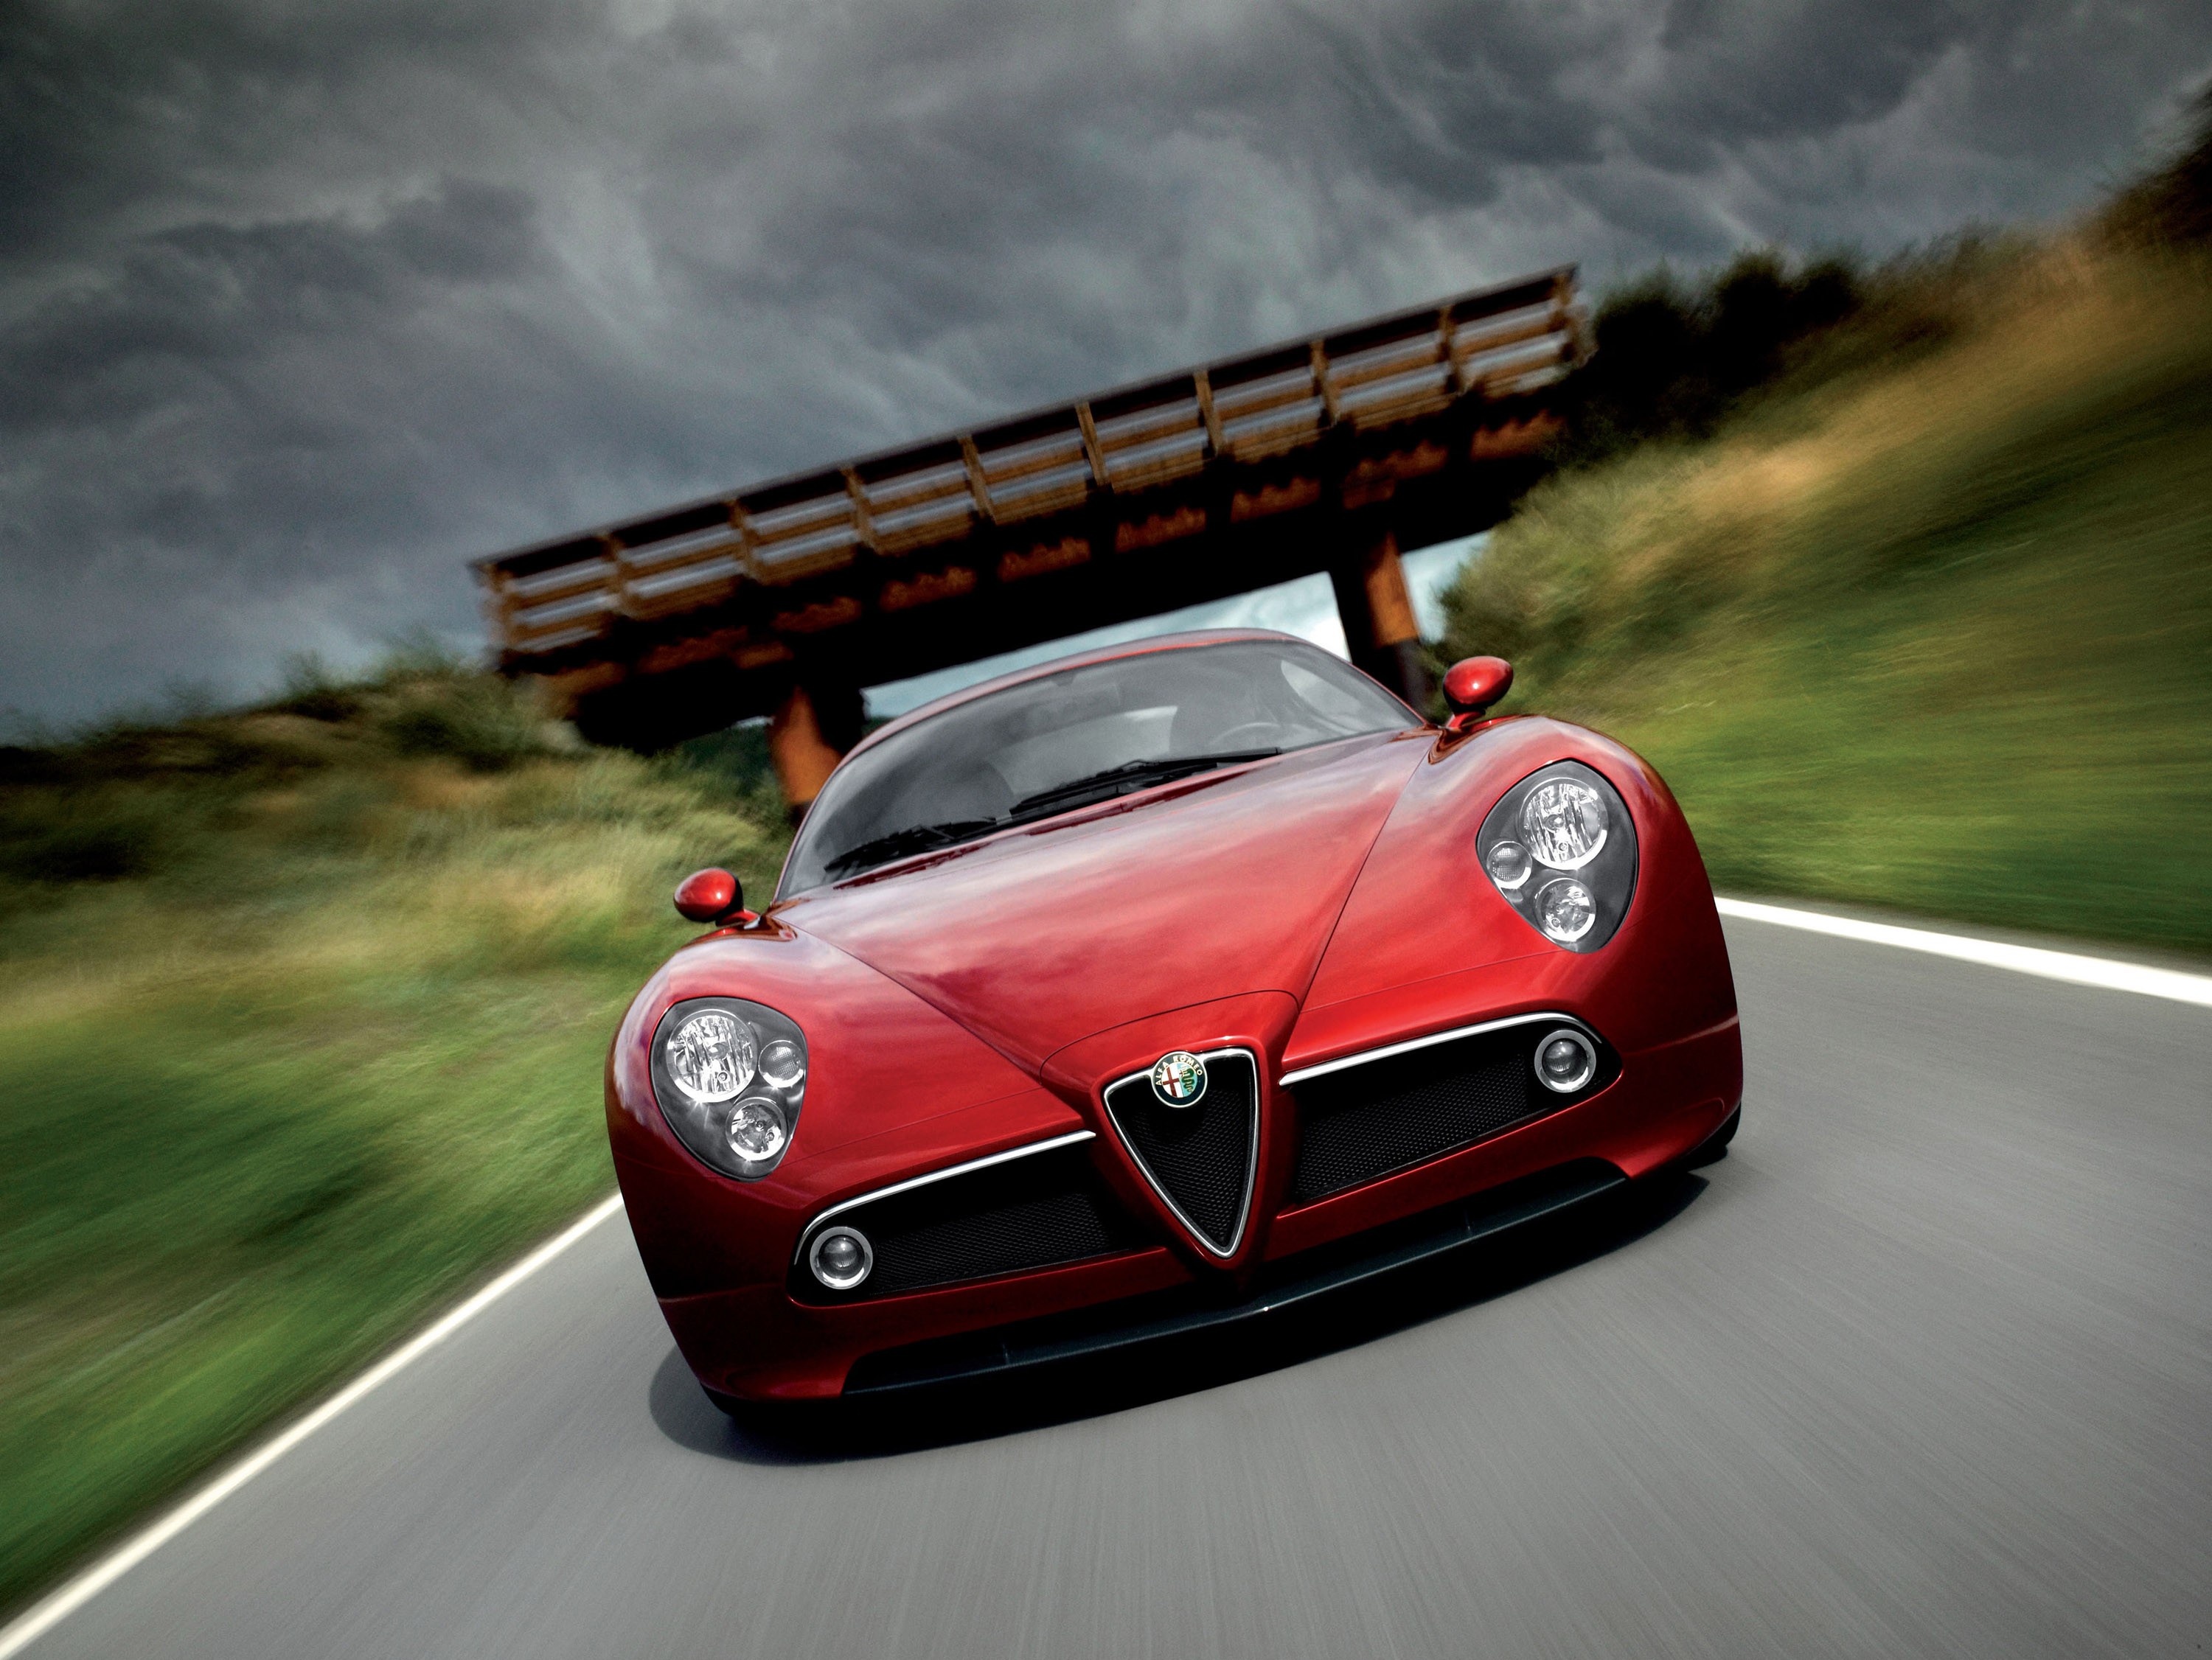 красный цвет, автомобили, мосты, фронт, Alfa Romeo, дороги, транспортные средства, размытость, Alfa Romeo 8C, красные автомобили, расплывчатый, Alfa Romeo 8C Competizione, вид спереди, размытым фоном - обои на рабочий стол